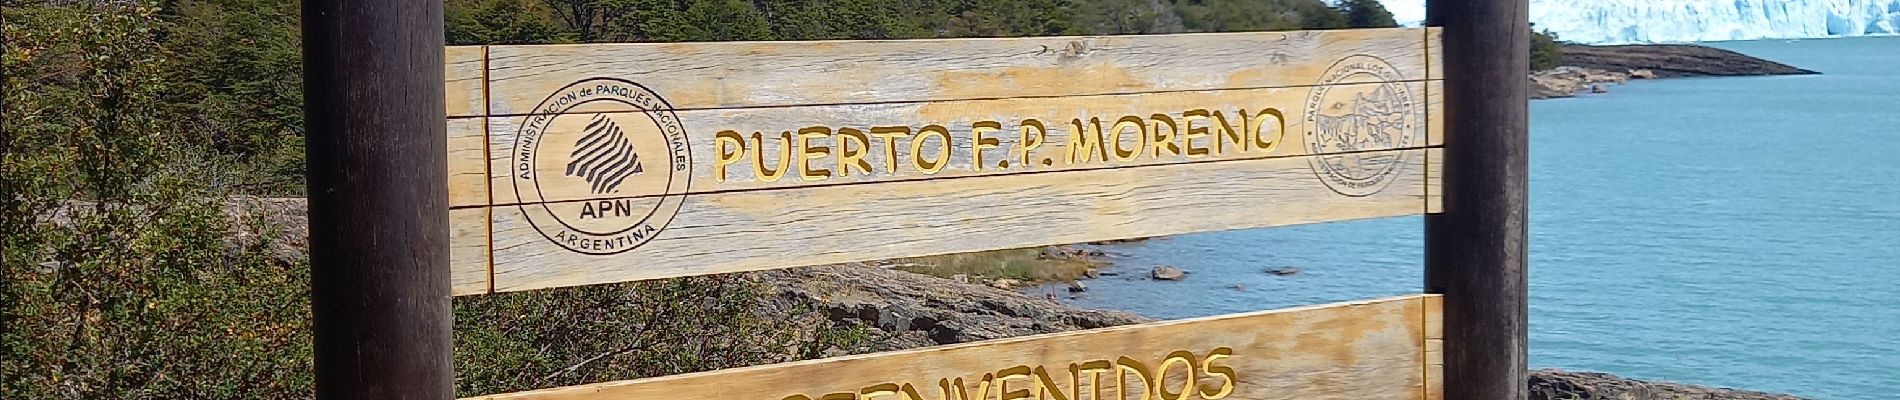 Percorso Marcia Unknown - Perito Moreno - Photo